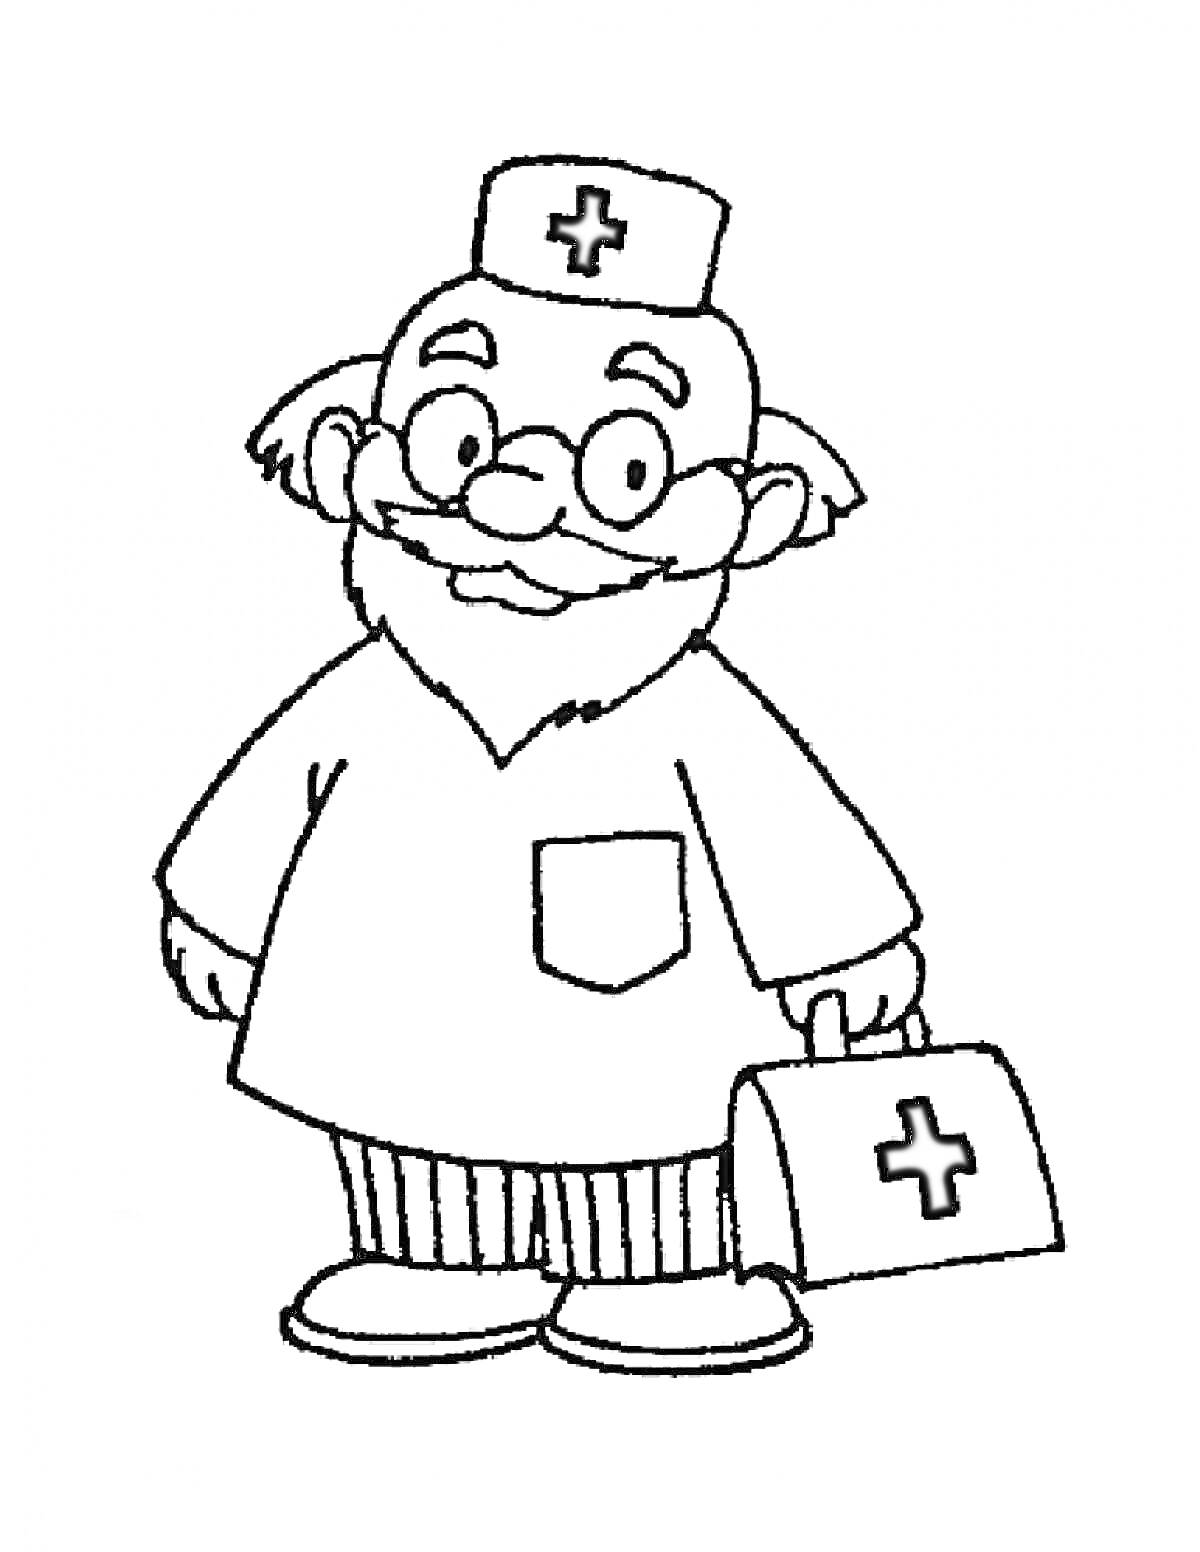 Доктор Айболит с чемоданом и медицинской шапочкой